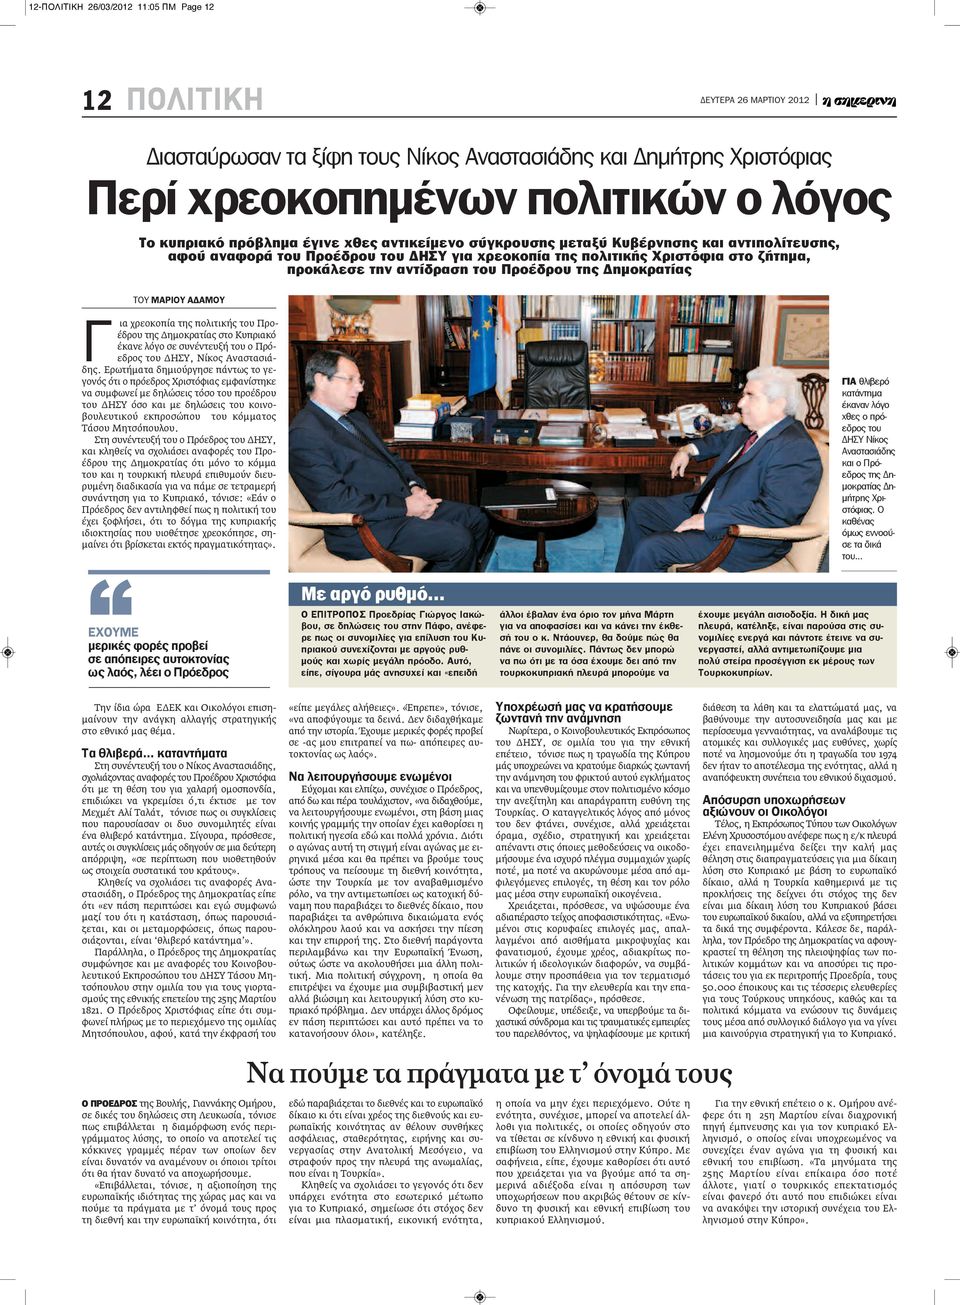 ΑΔΑΜΟΥ Γ ια χρεοκοπία της πολιτικής του Προέδρου της Δημοκρατίας στο Κυπριακό έκανε λόγο σε συνέντευξή του ο Πρόεδρος του ΔΗΣΥ, Νίκος Αναστασιάδης.